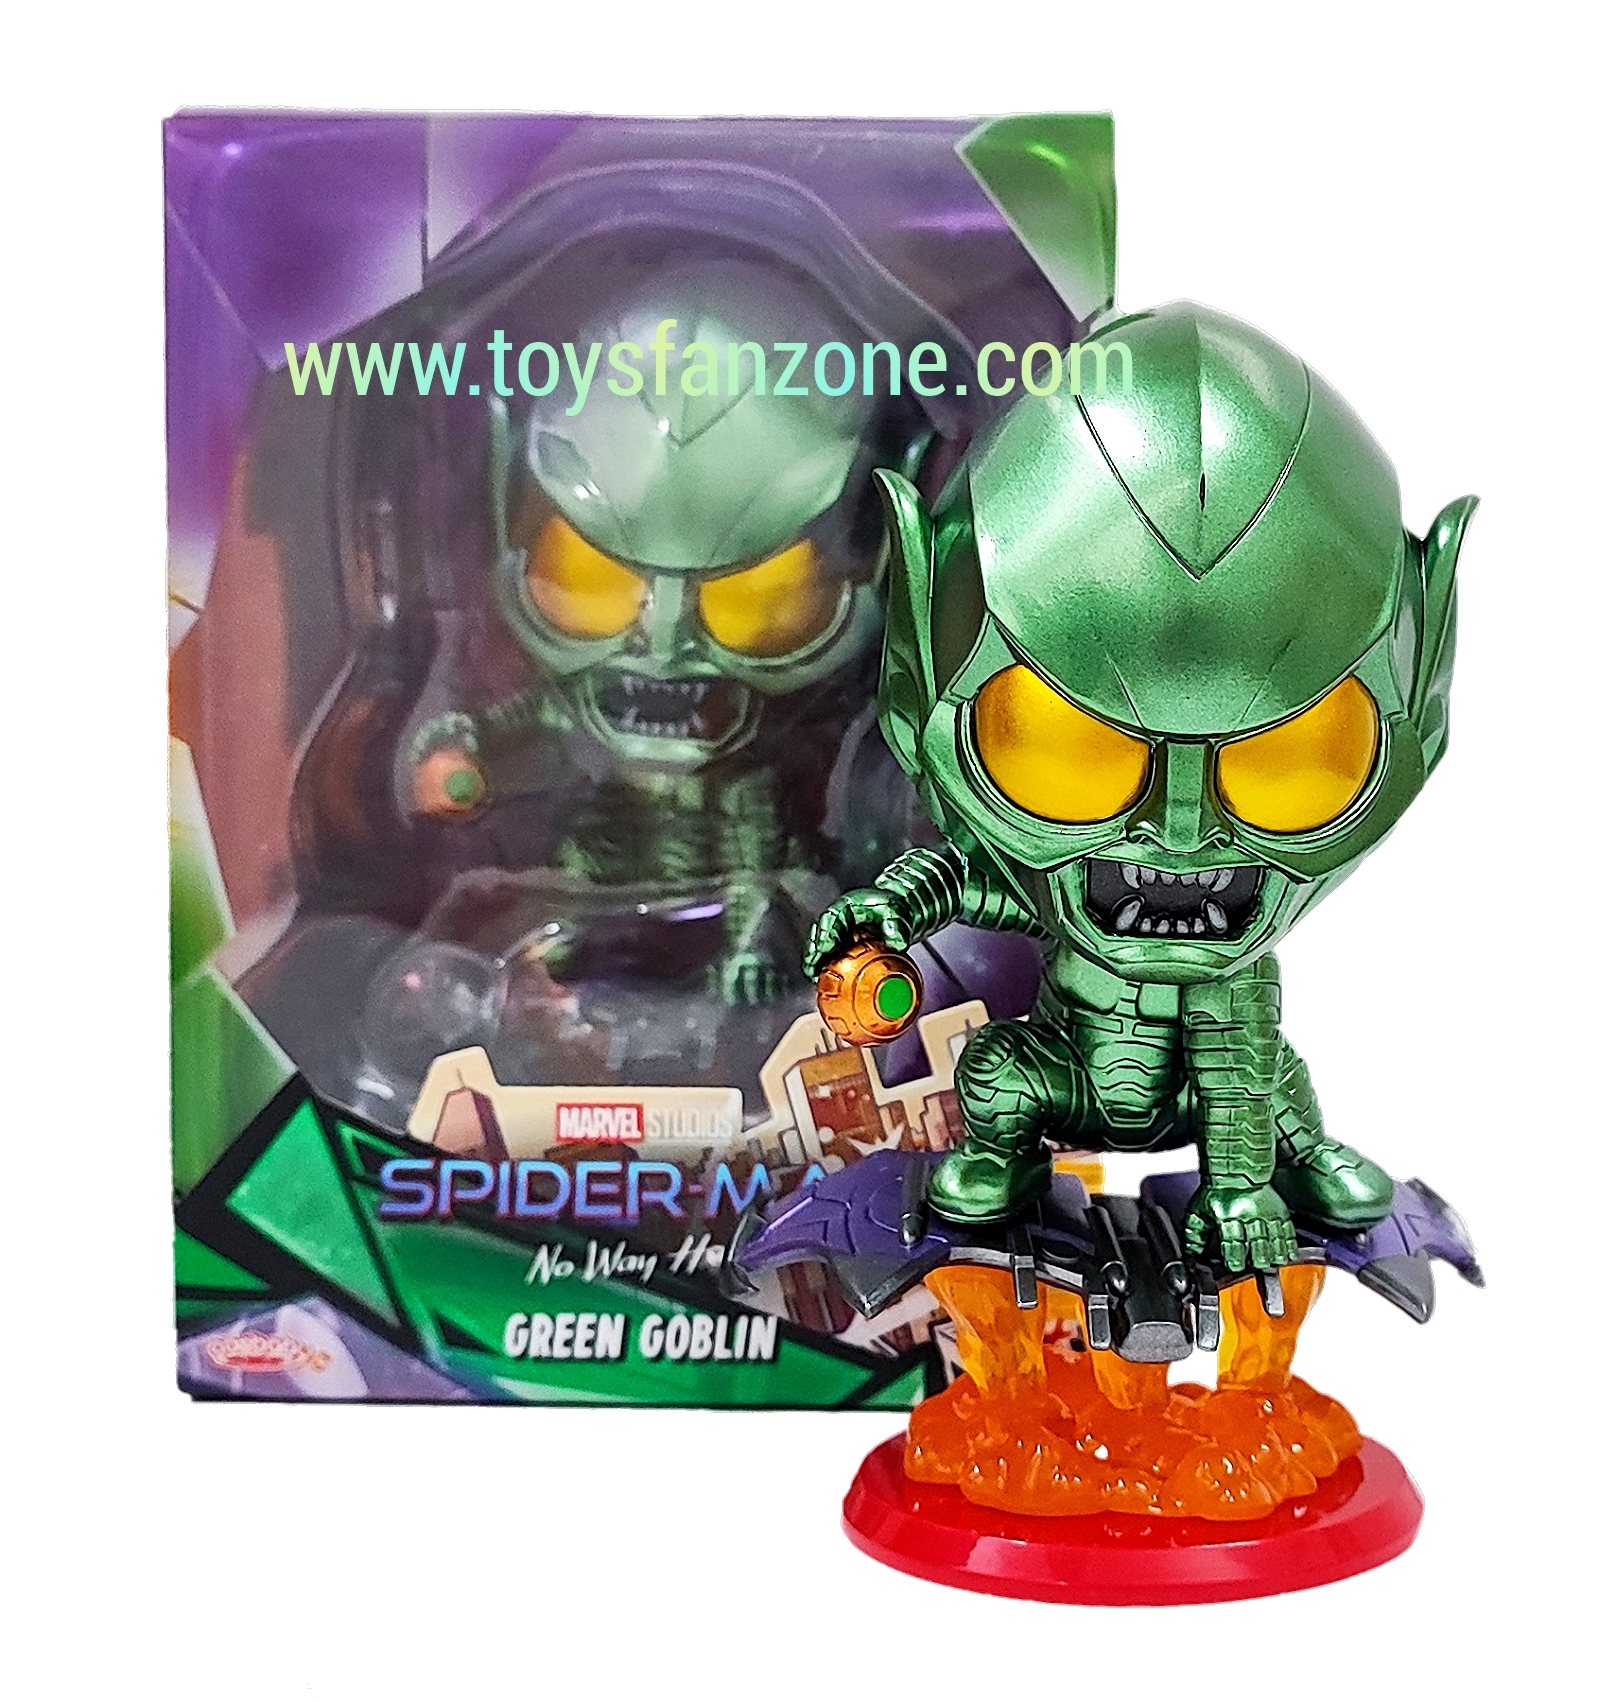 green goblin hot toys